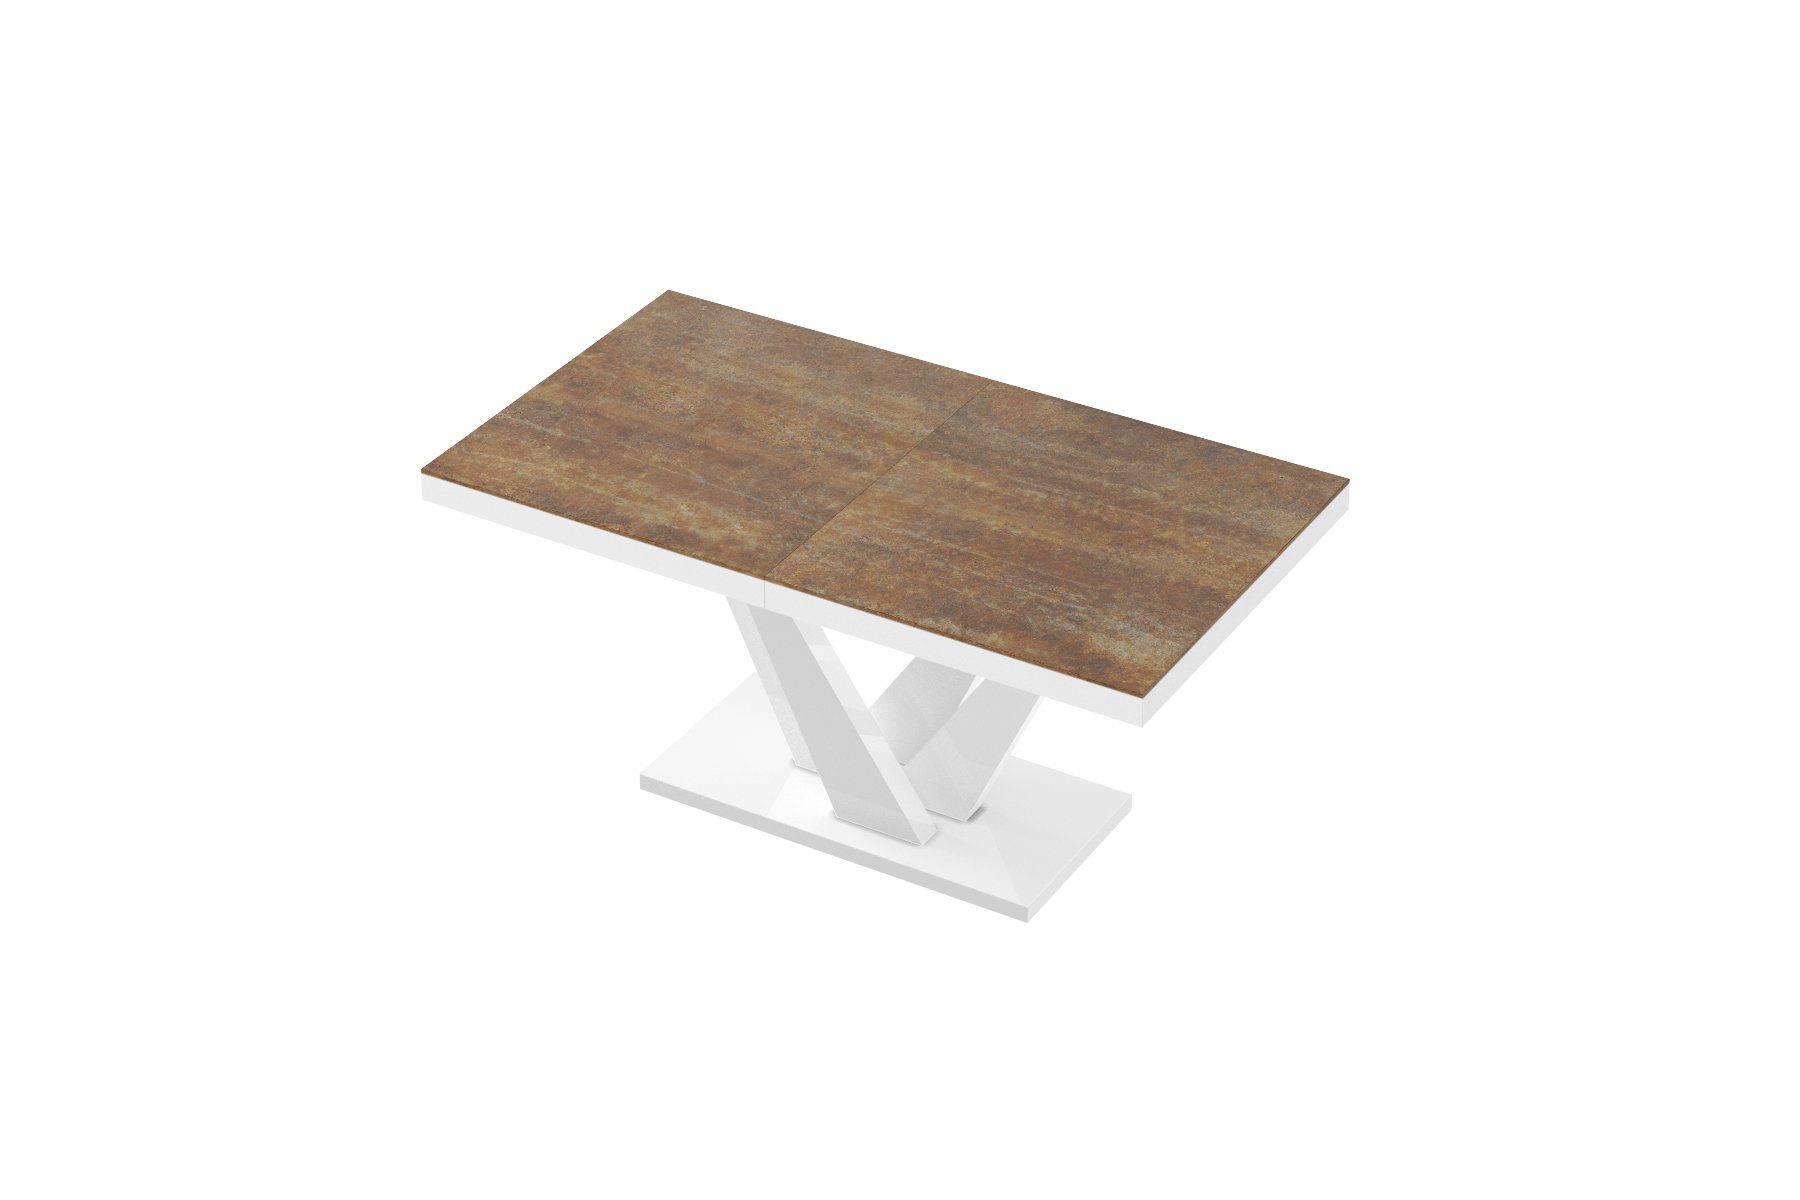 designimpex Esstisch Design Esstisch Tisch Hochglanz cm - matt HEV-111 160 bis ausziehbar 256 Weiß Rostoptik